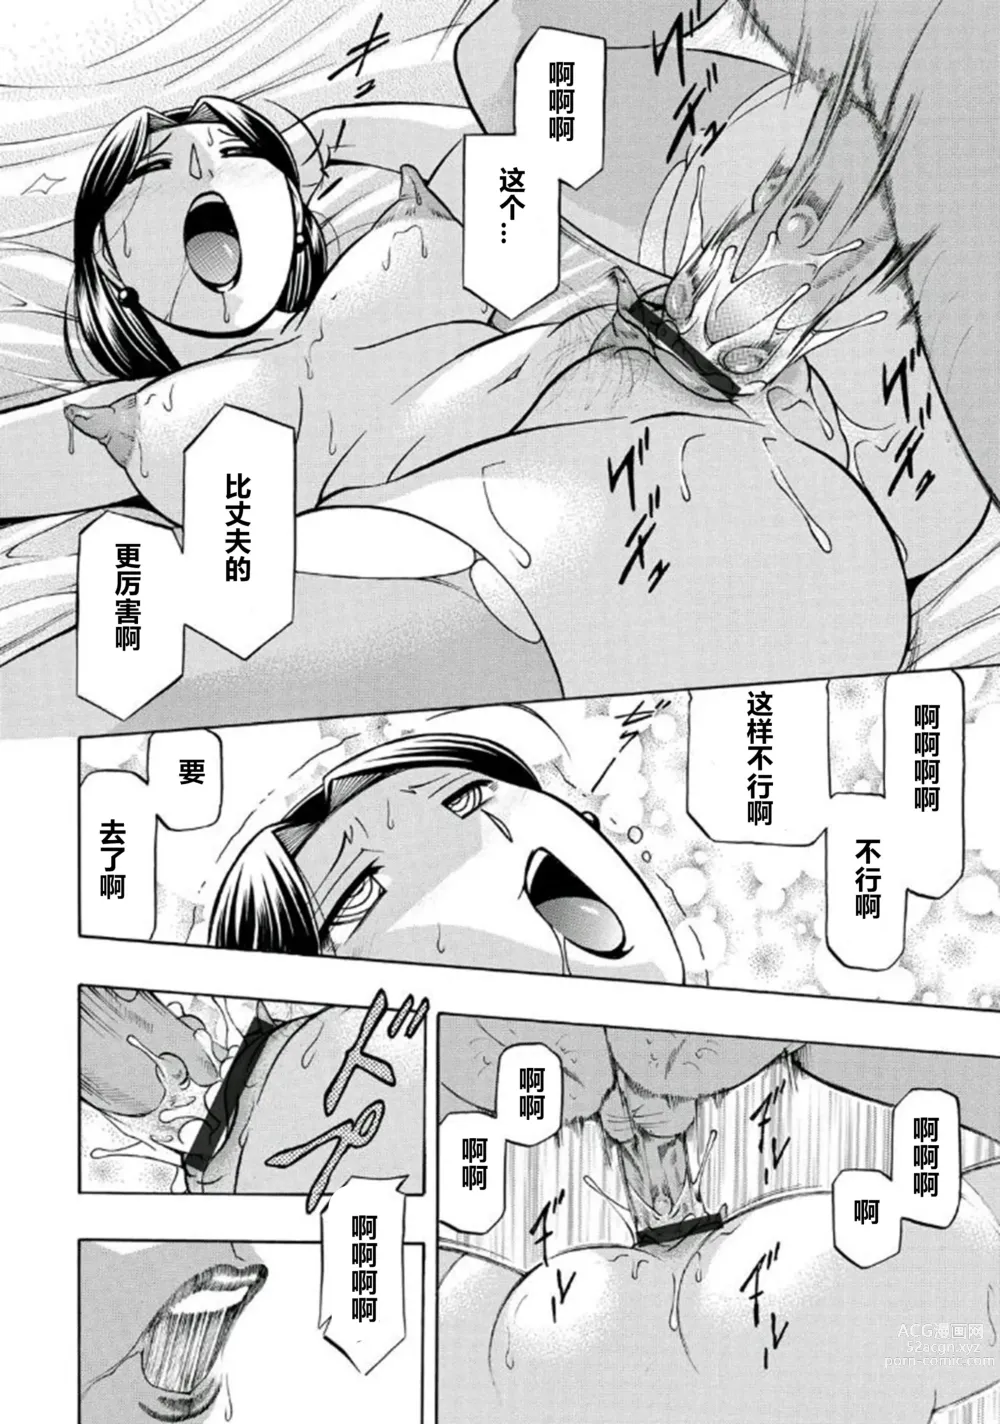 Page 119 of manga Pink Kuppuku - Pink Surrender